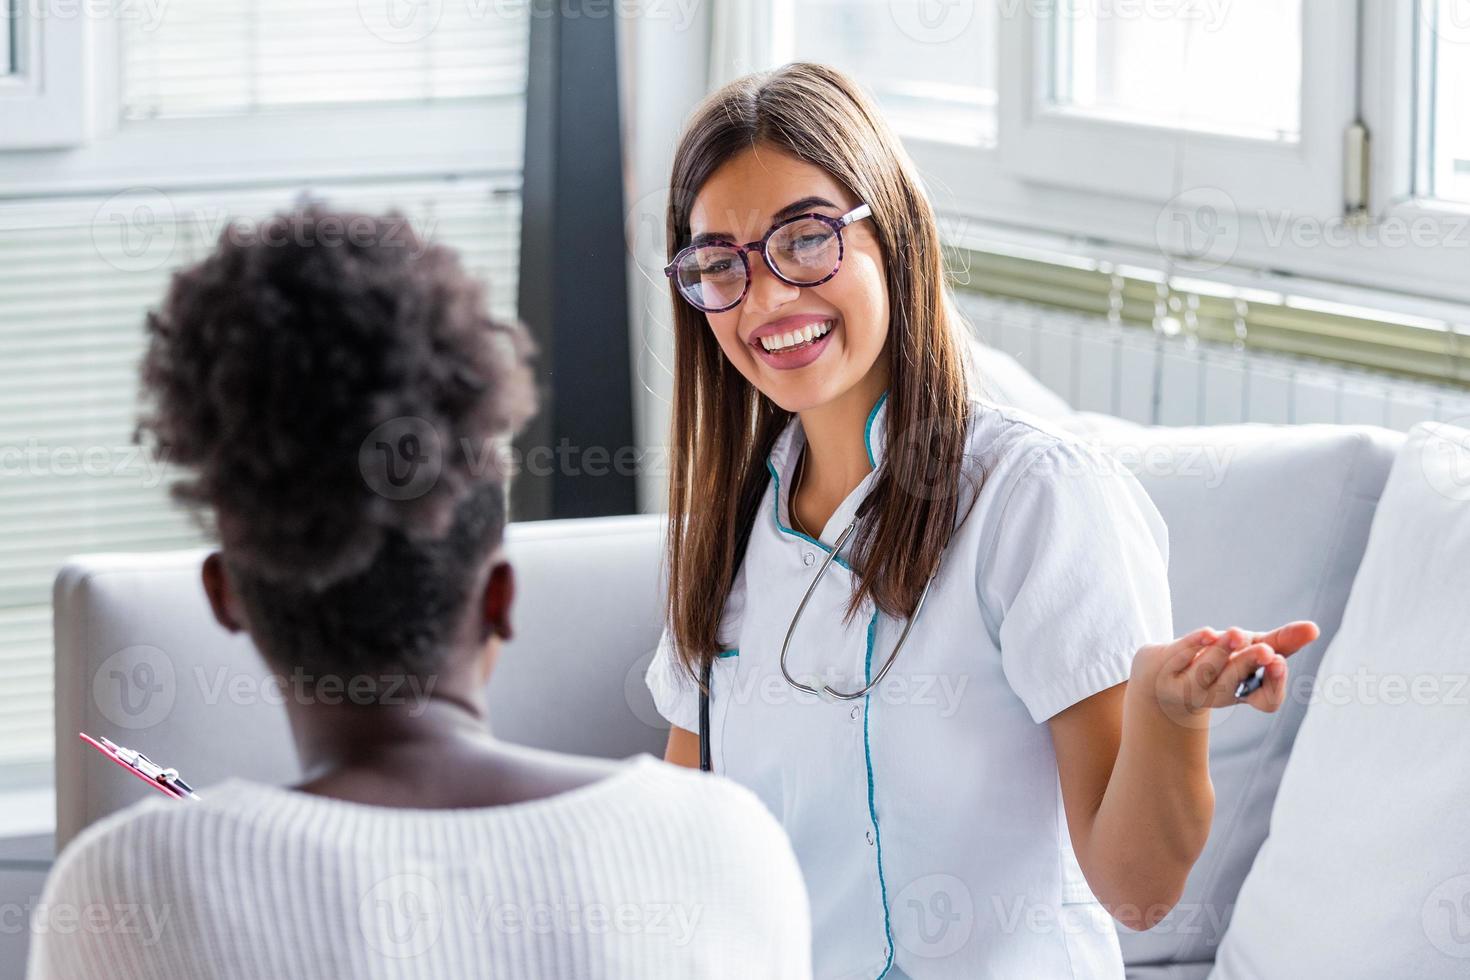 patiente souriante dans le cabinet du médecin, elle reçoit un médicament sur ordonnance, charmante femme médecin donnant des conseils à une patiente. photo